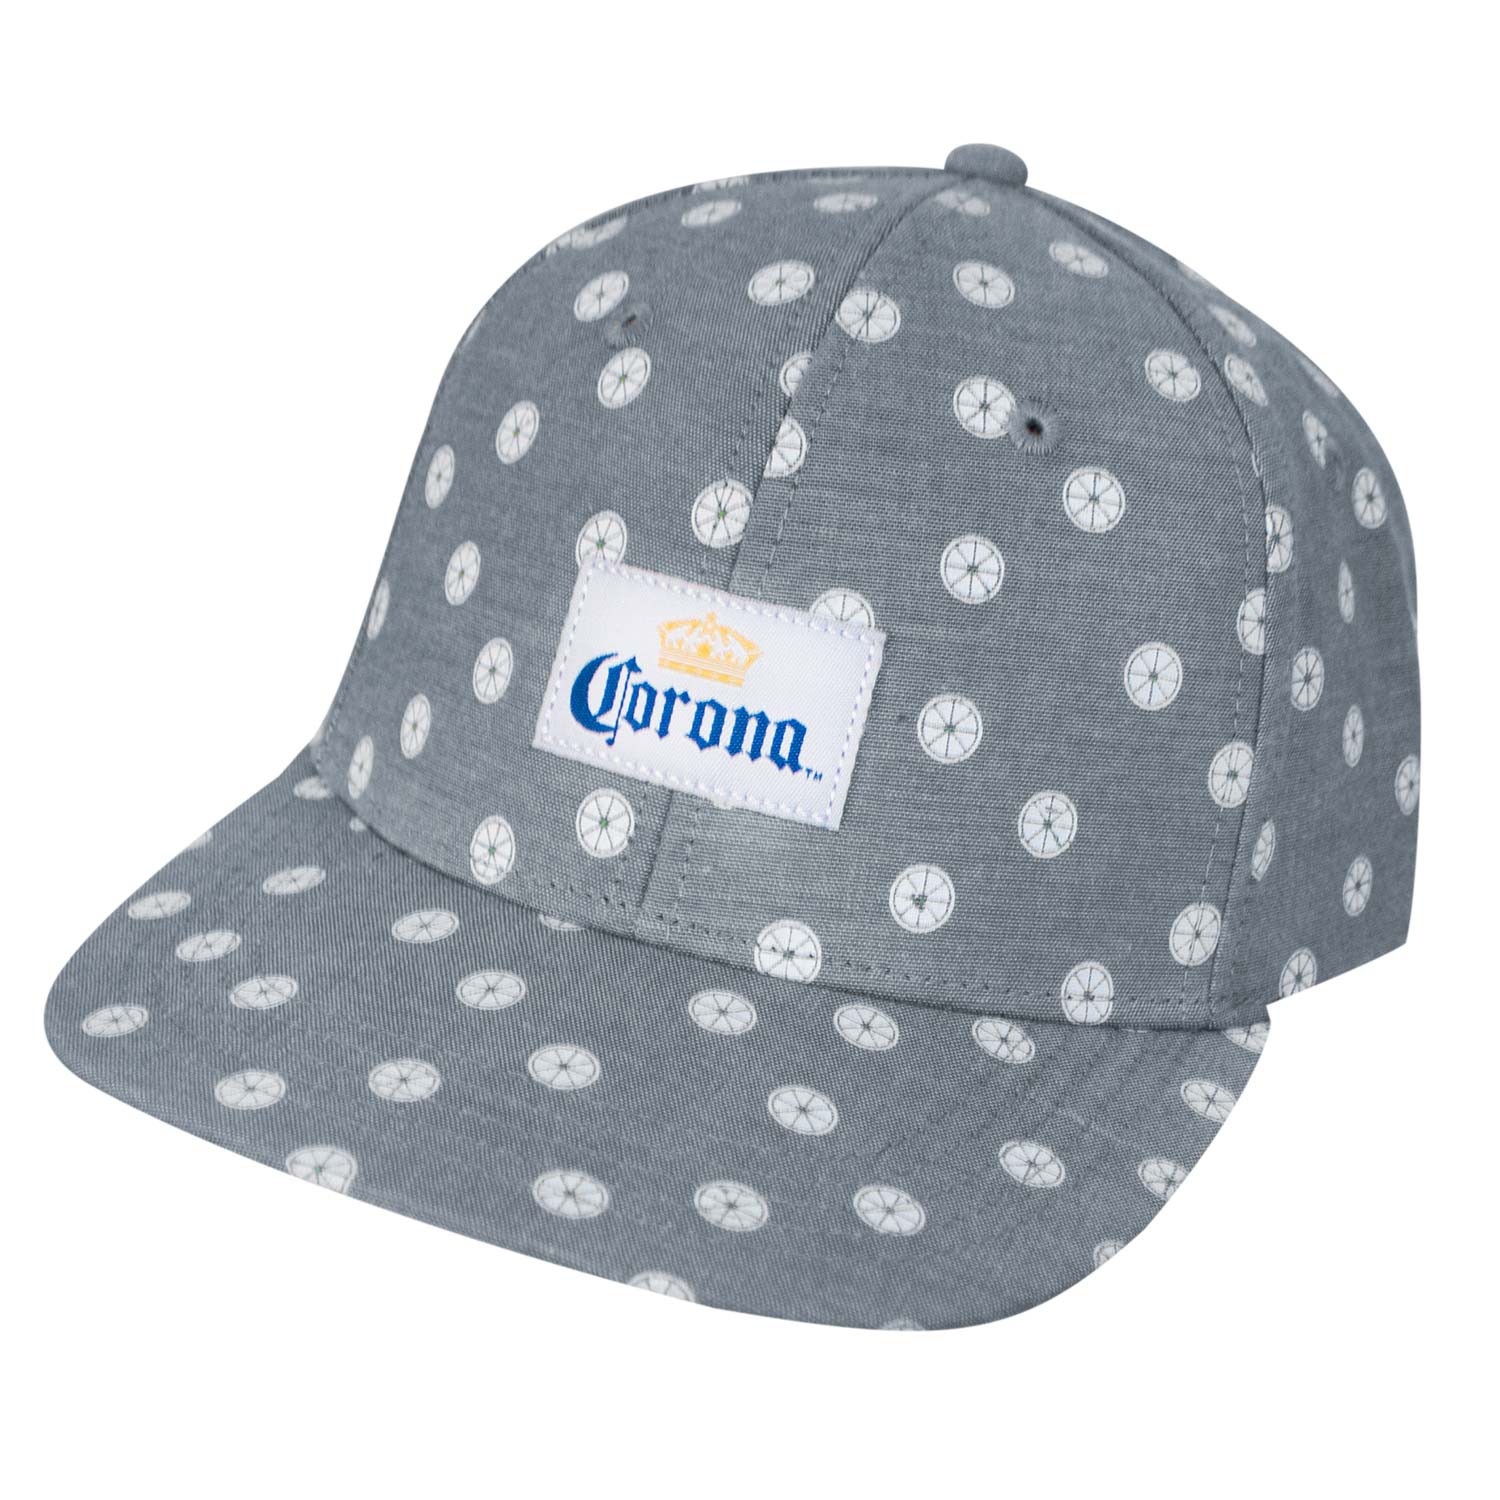 Corona Mini Limes Strapback Hat